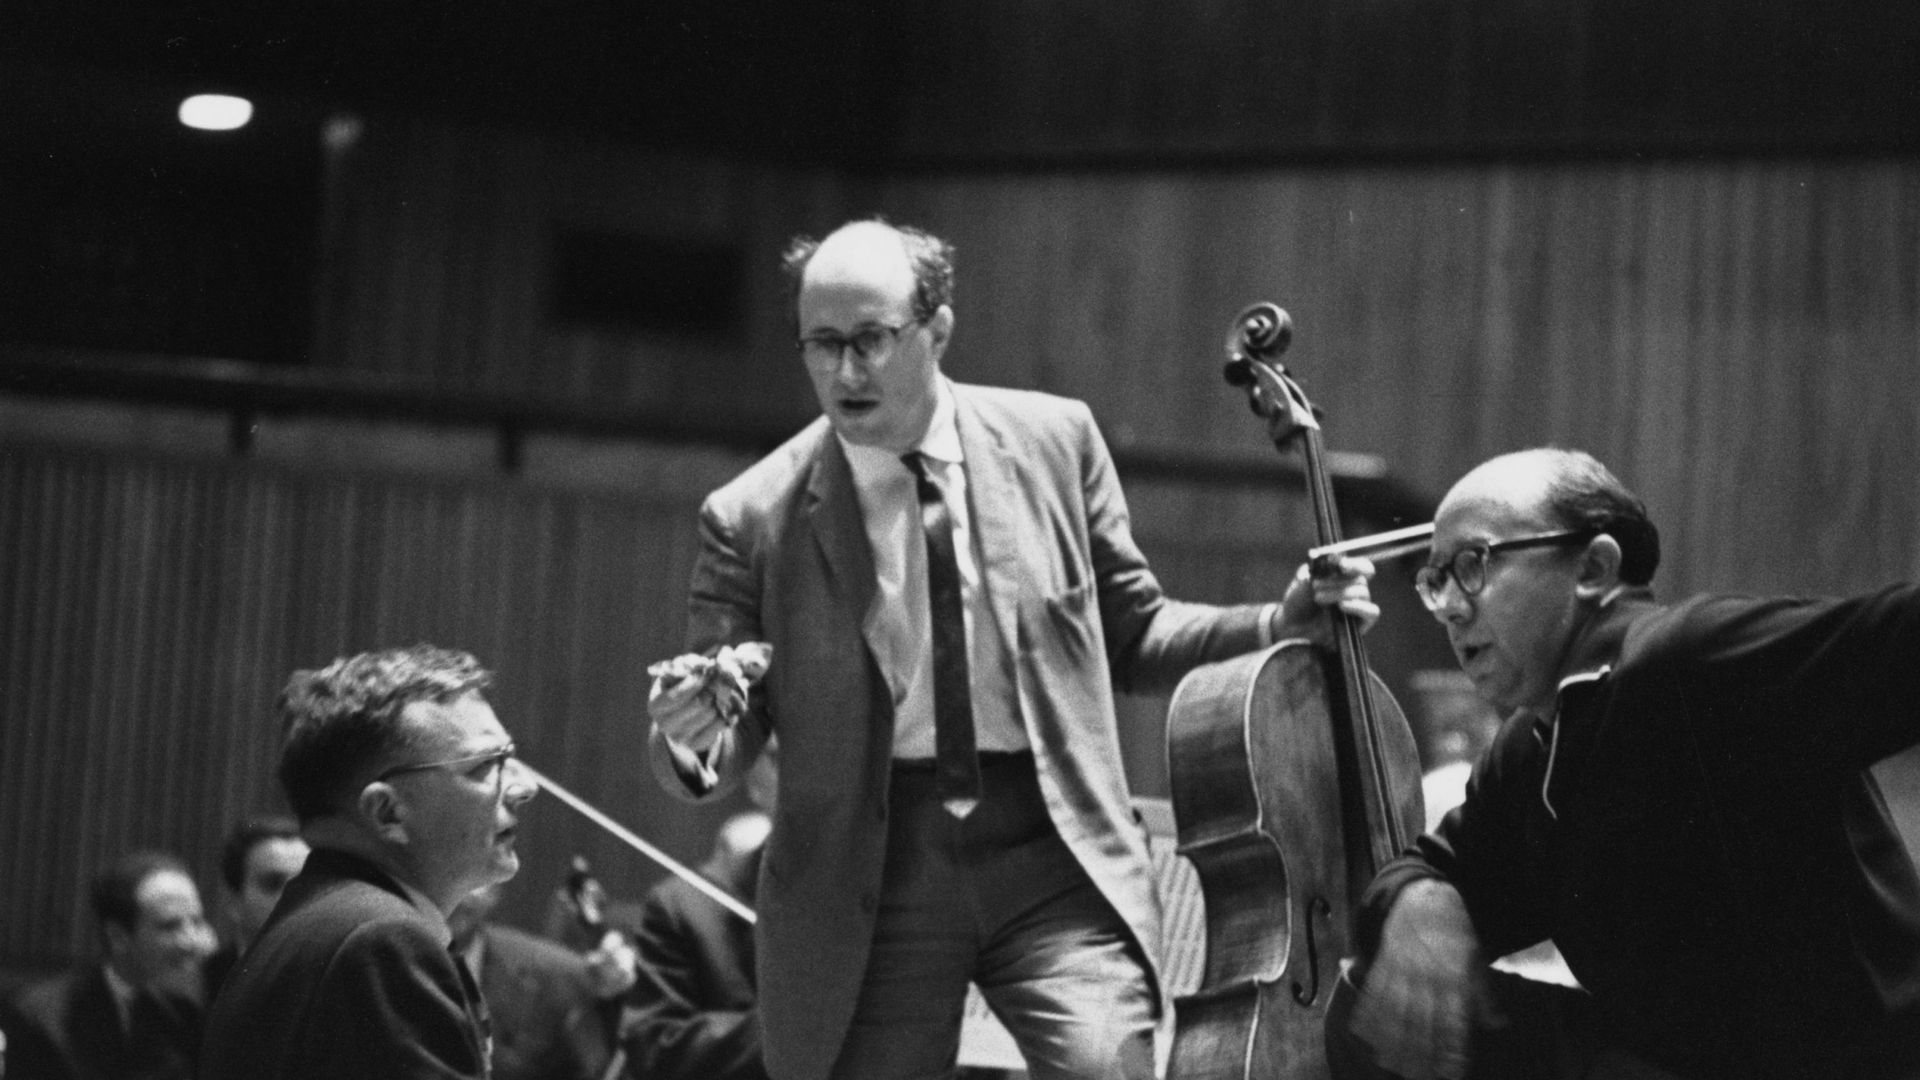 Le compositeur et pianiste russe Dmitri Chostakovitch (1906-1975), à droite, discute de son Concerto pour violoncelle avec le chef d’orchestre allemand Gennady Rozhdestevensky de l’Orchestre symphonique de Leningrad, à gauche, et le violoncelliste russe M